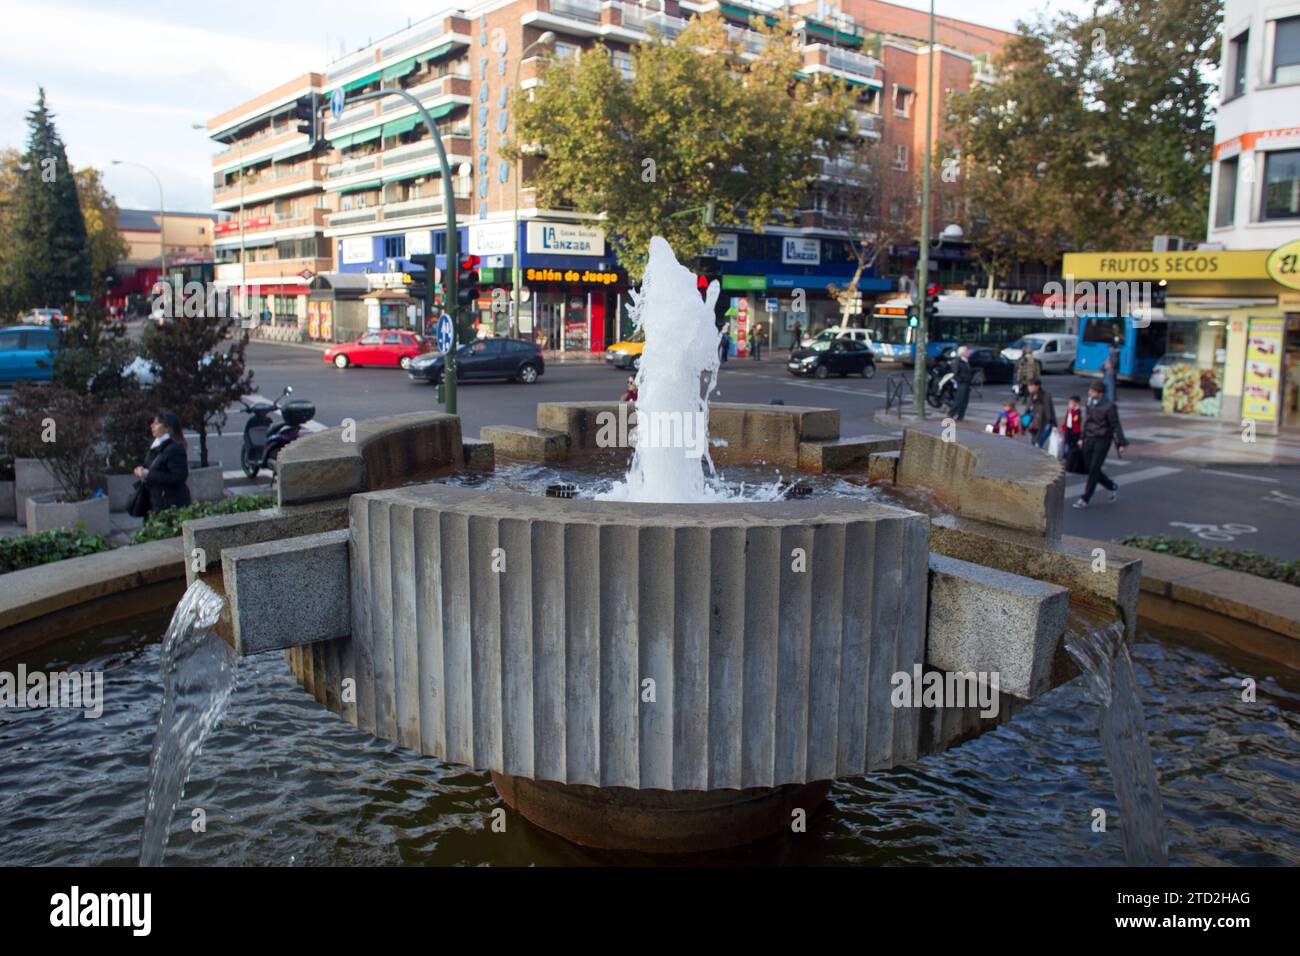 Madrid, 11/25/2015. Plaza de Ciudad Lineal, luogo occupato dalla Croce dei Caduti. Foto: Isabel Permuy ARCHDC. Crediti: Album / Archivo ABC / Isabel B Permuy Foto Stock